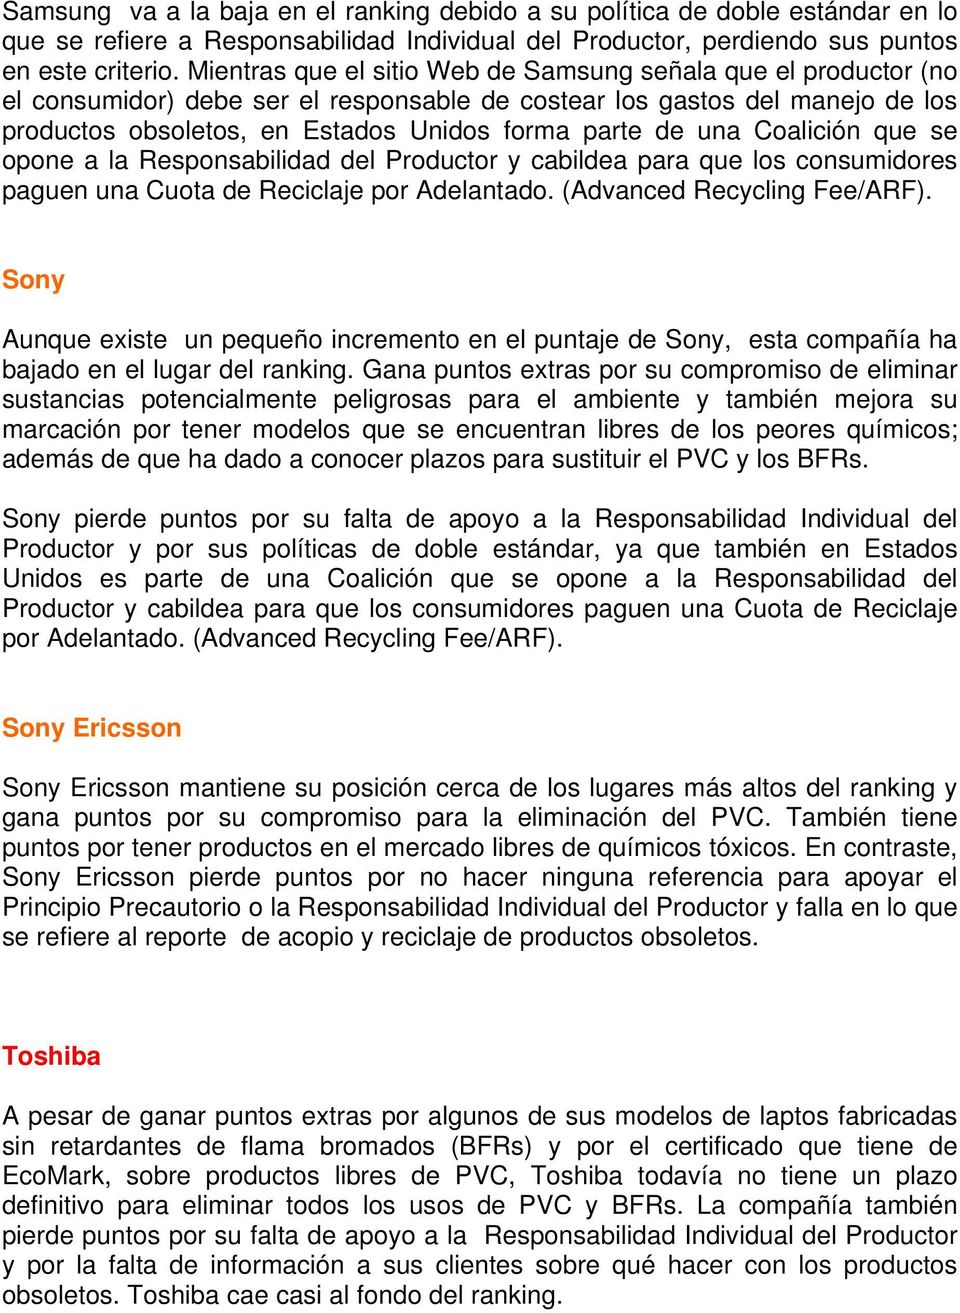 una Coalición que se opone a la Responsabilidad del Productor y cabildea para que los consumidores paguen una Cuota de Reciclaje por Adelantado. (Advanced Recycling Fee/ARF).